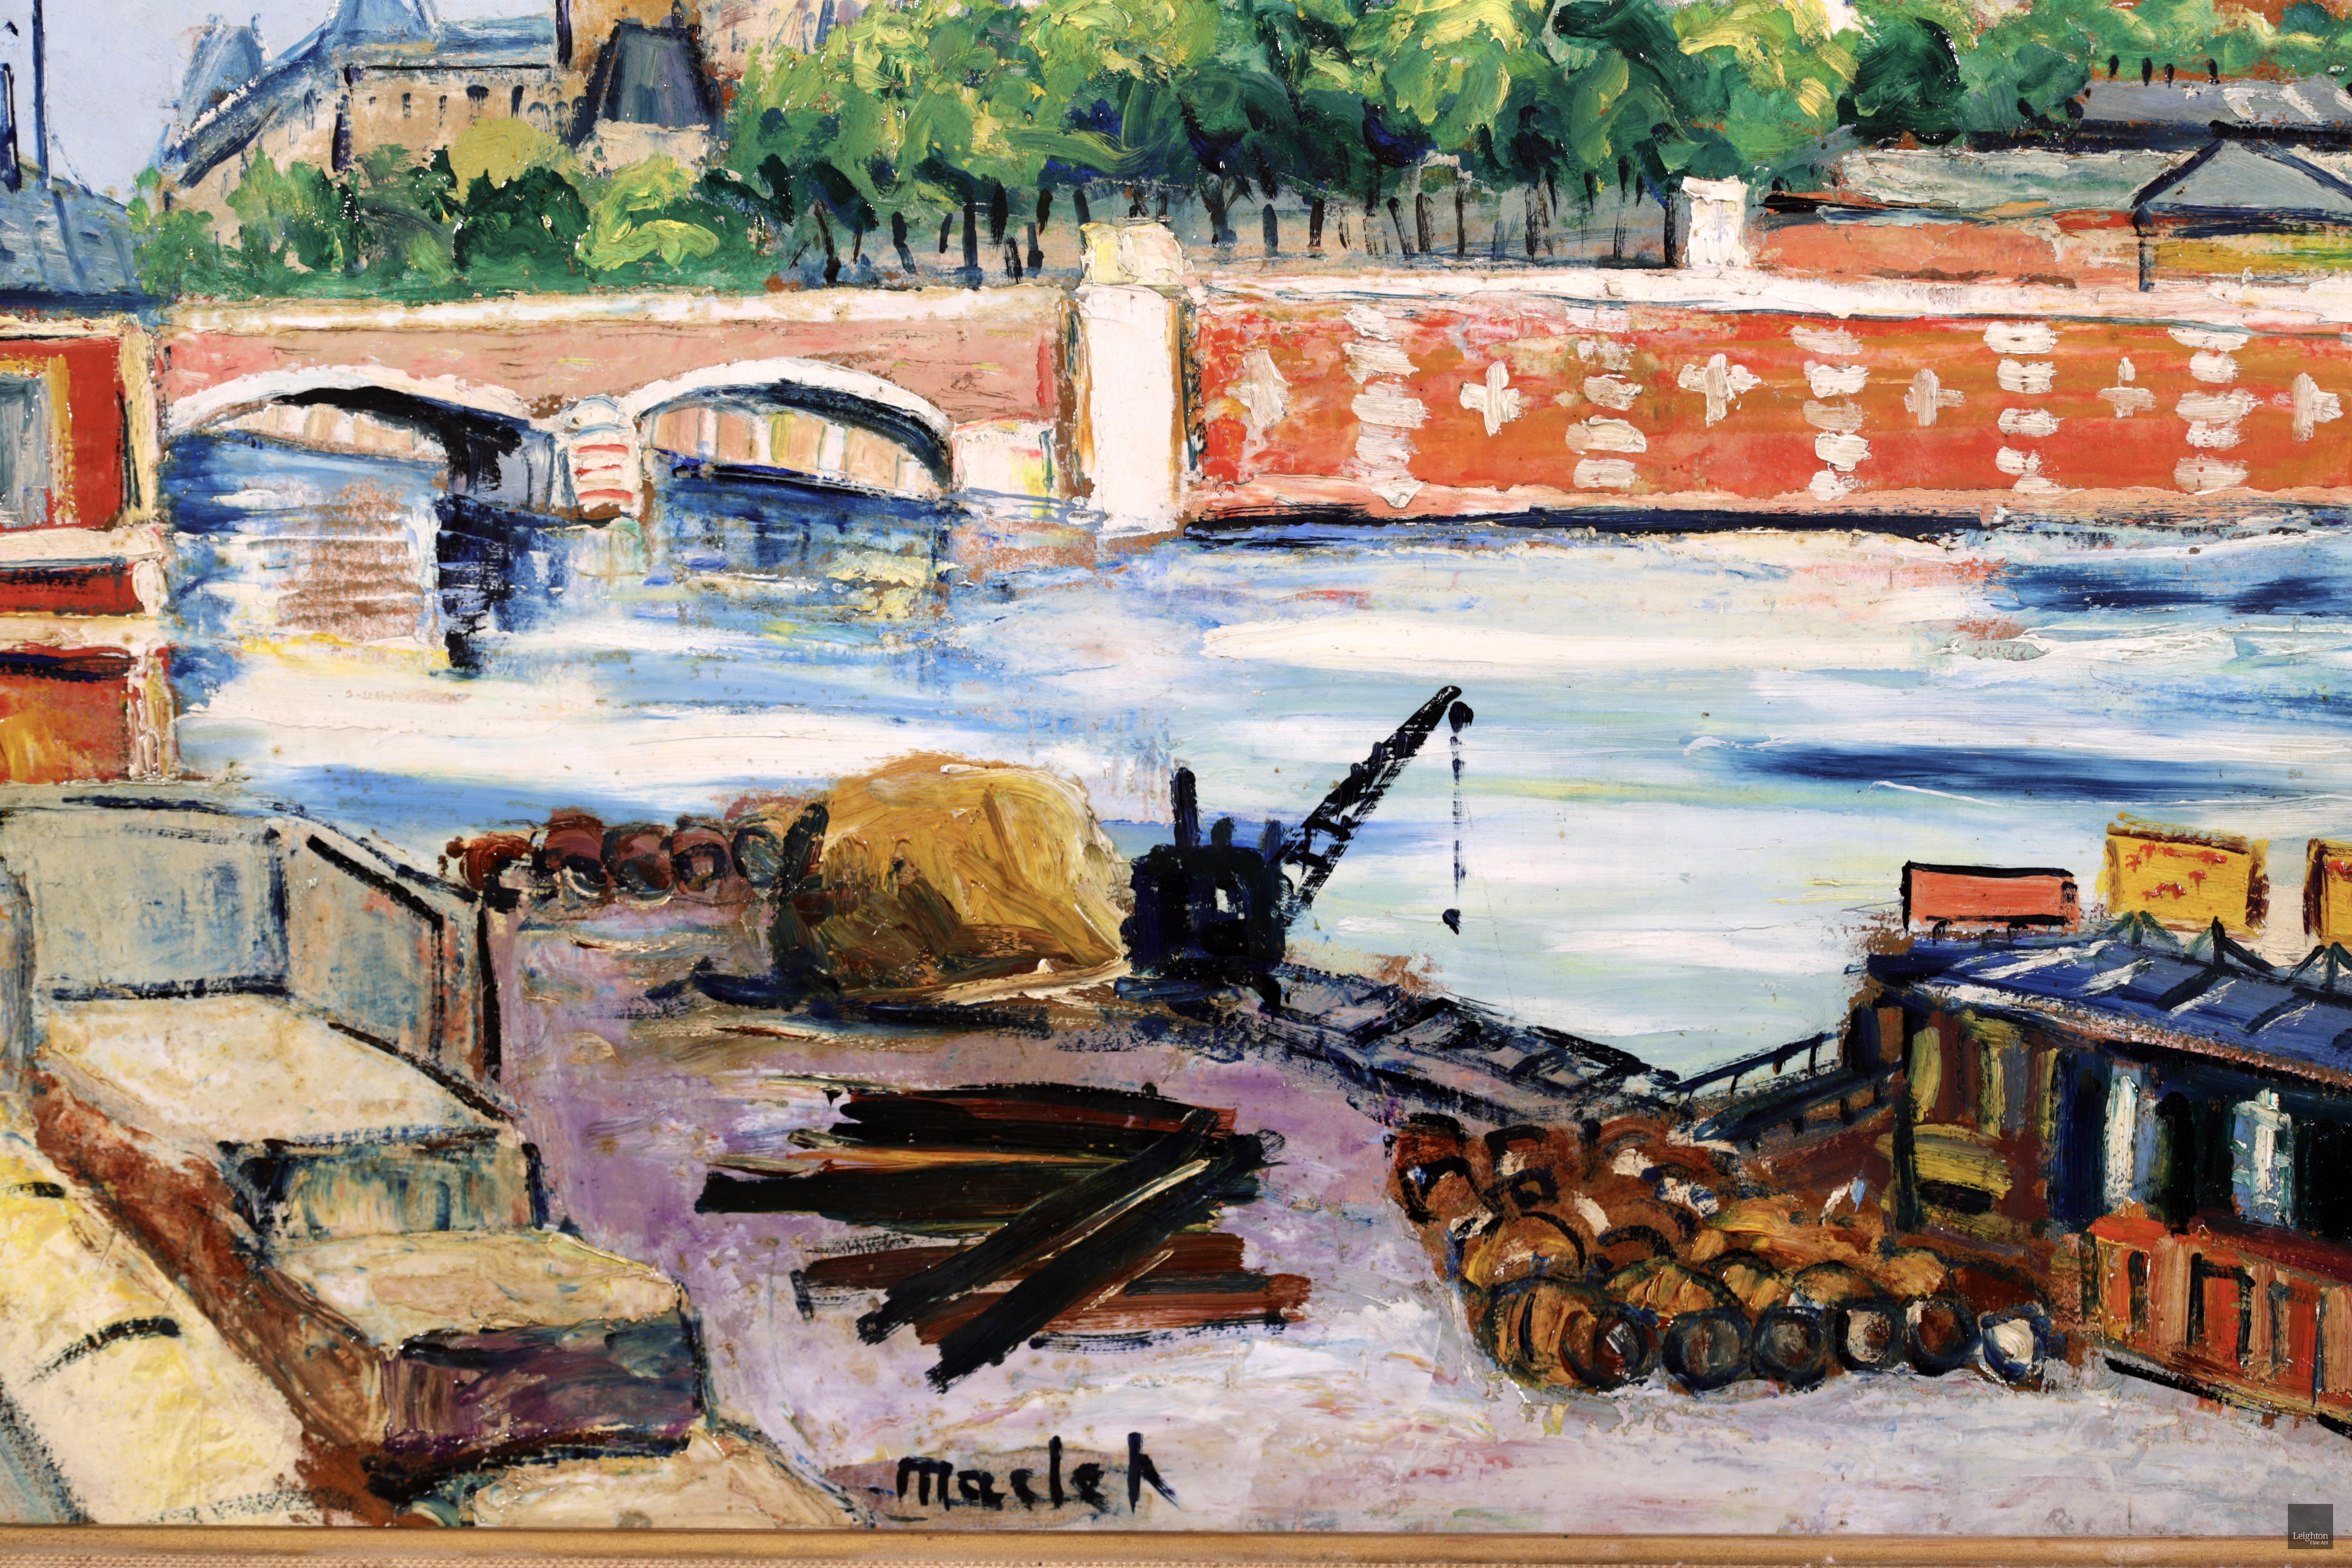 Notre Dame - Ile de la Cite - Post-Impressionist Oil, Riverscape - Elisee Maclet - Brown Figurative Painting by Elisée Maclet